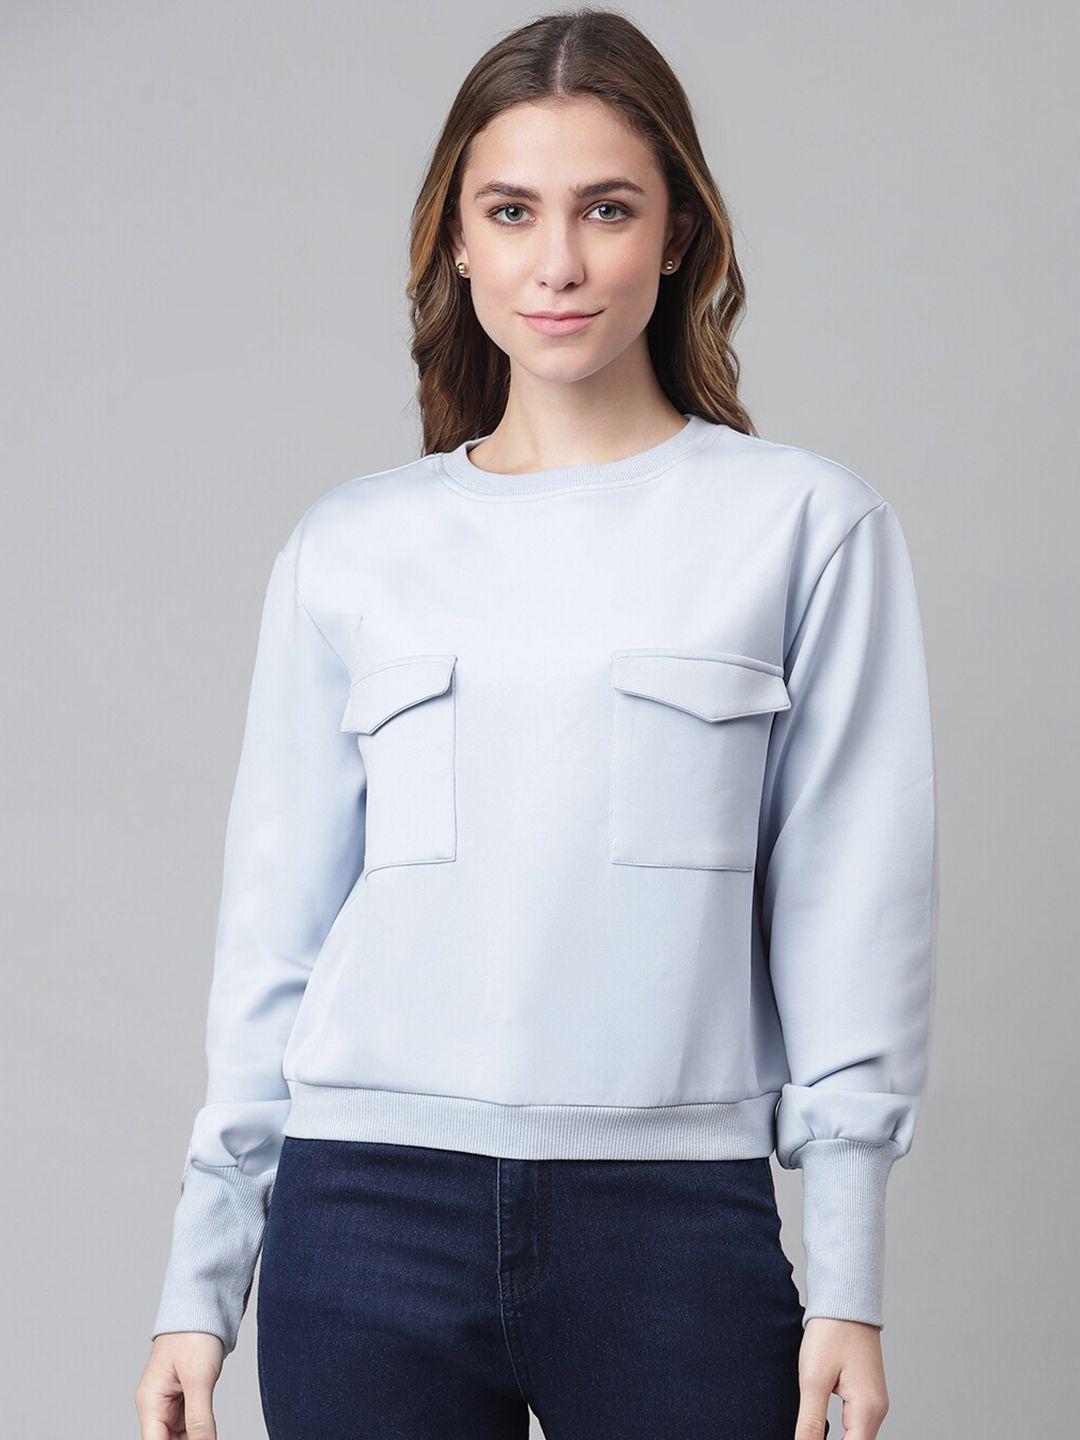 otorva women blue sweatshirt